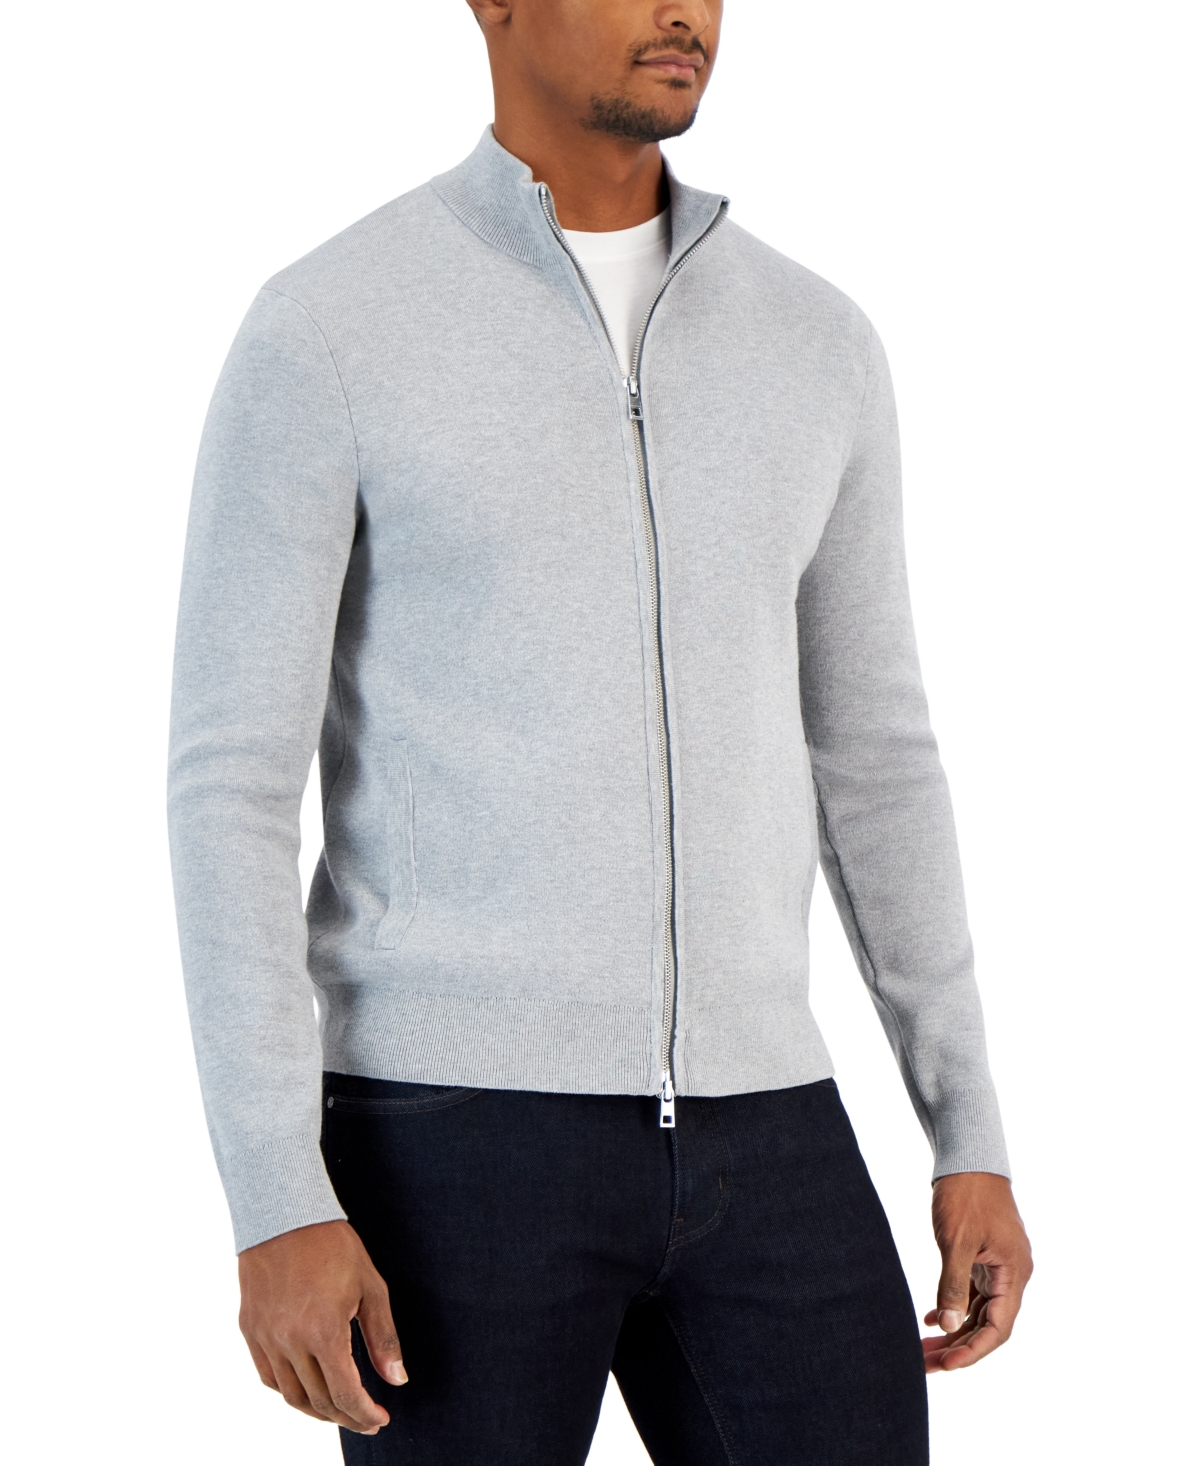 Michael Kors Men's Double Knit Zip-front Sweater Jacket In Heather Grey